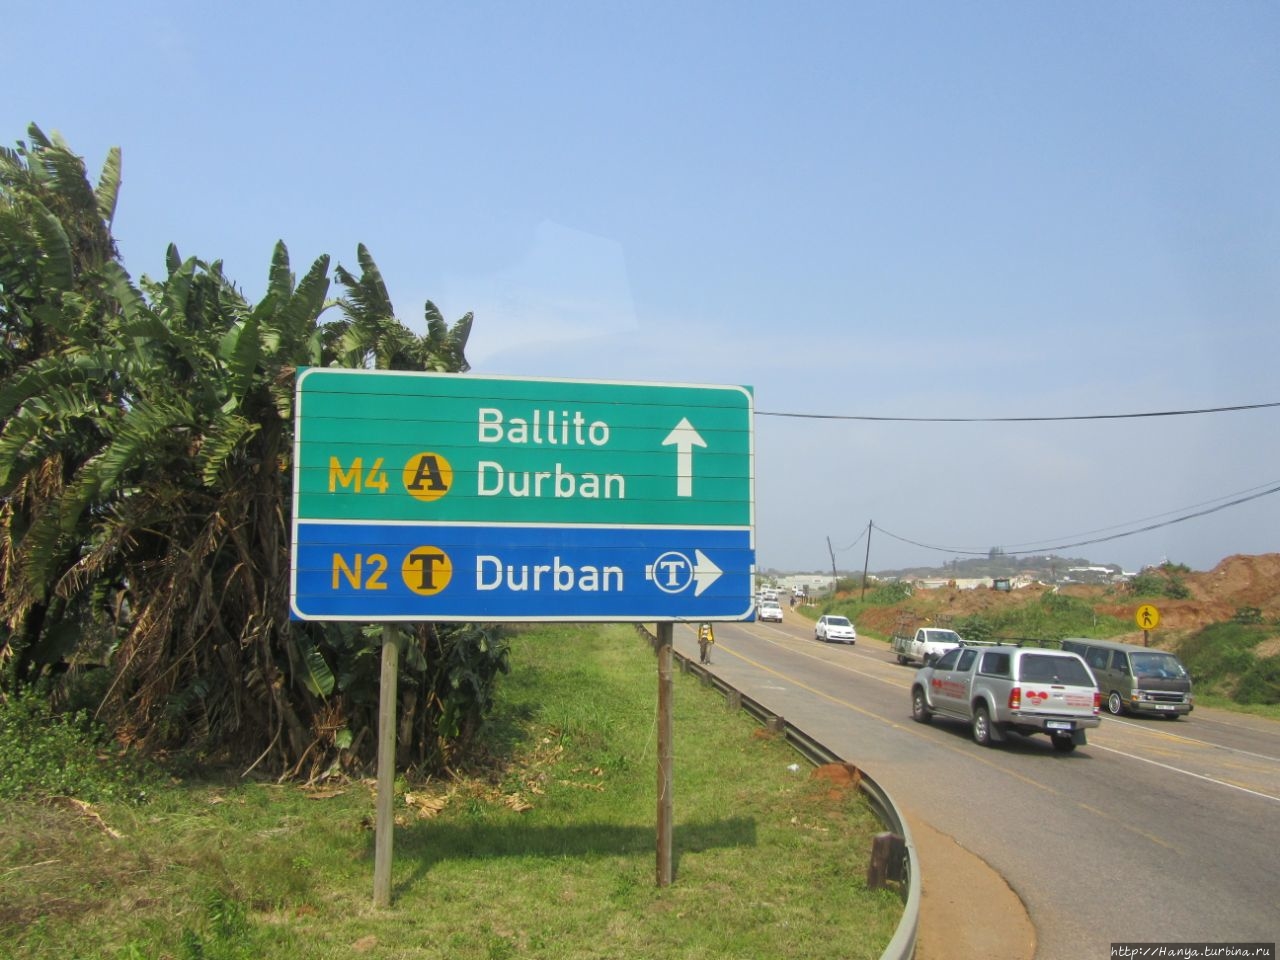 История Зулуленда, рассказанная по дороге в Дурбан. Ч. 23 Провинция Квазулу-Натал, ЮАР